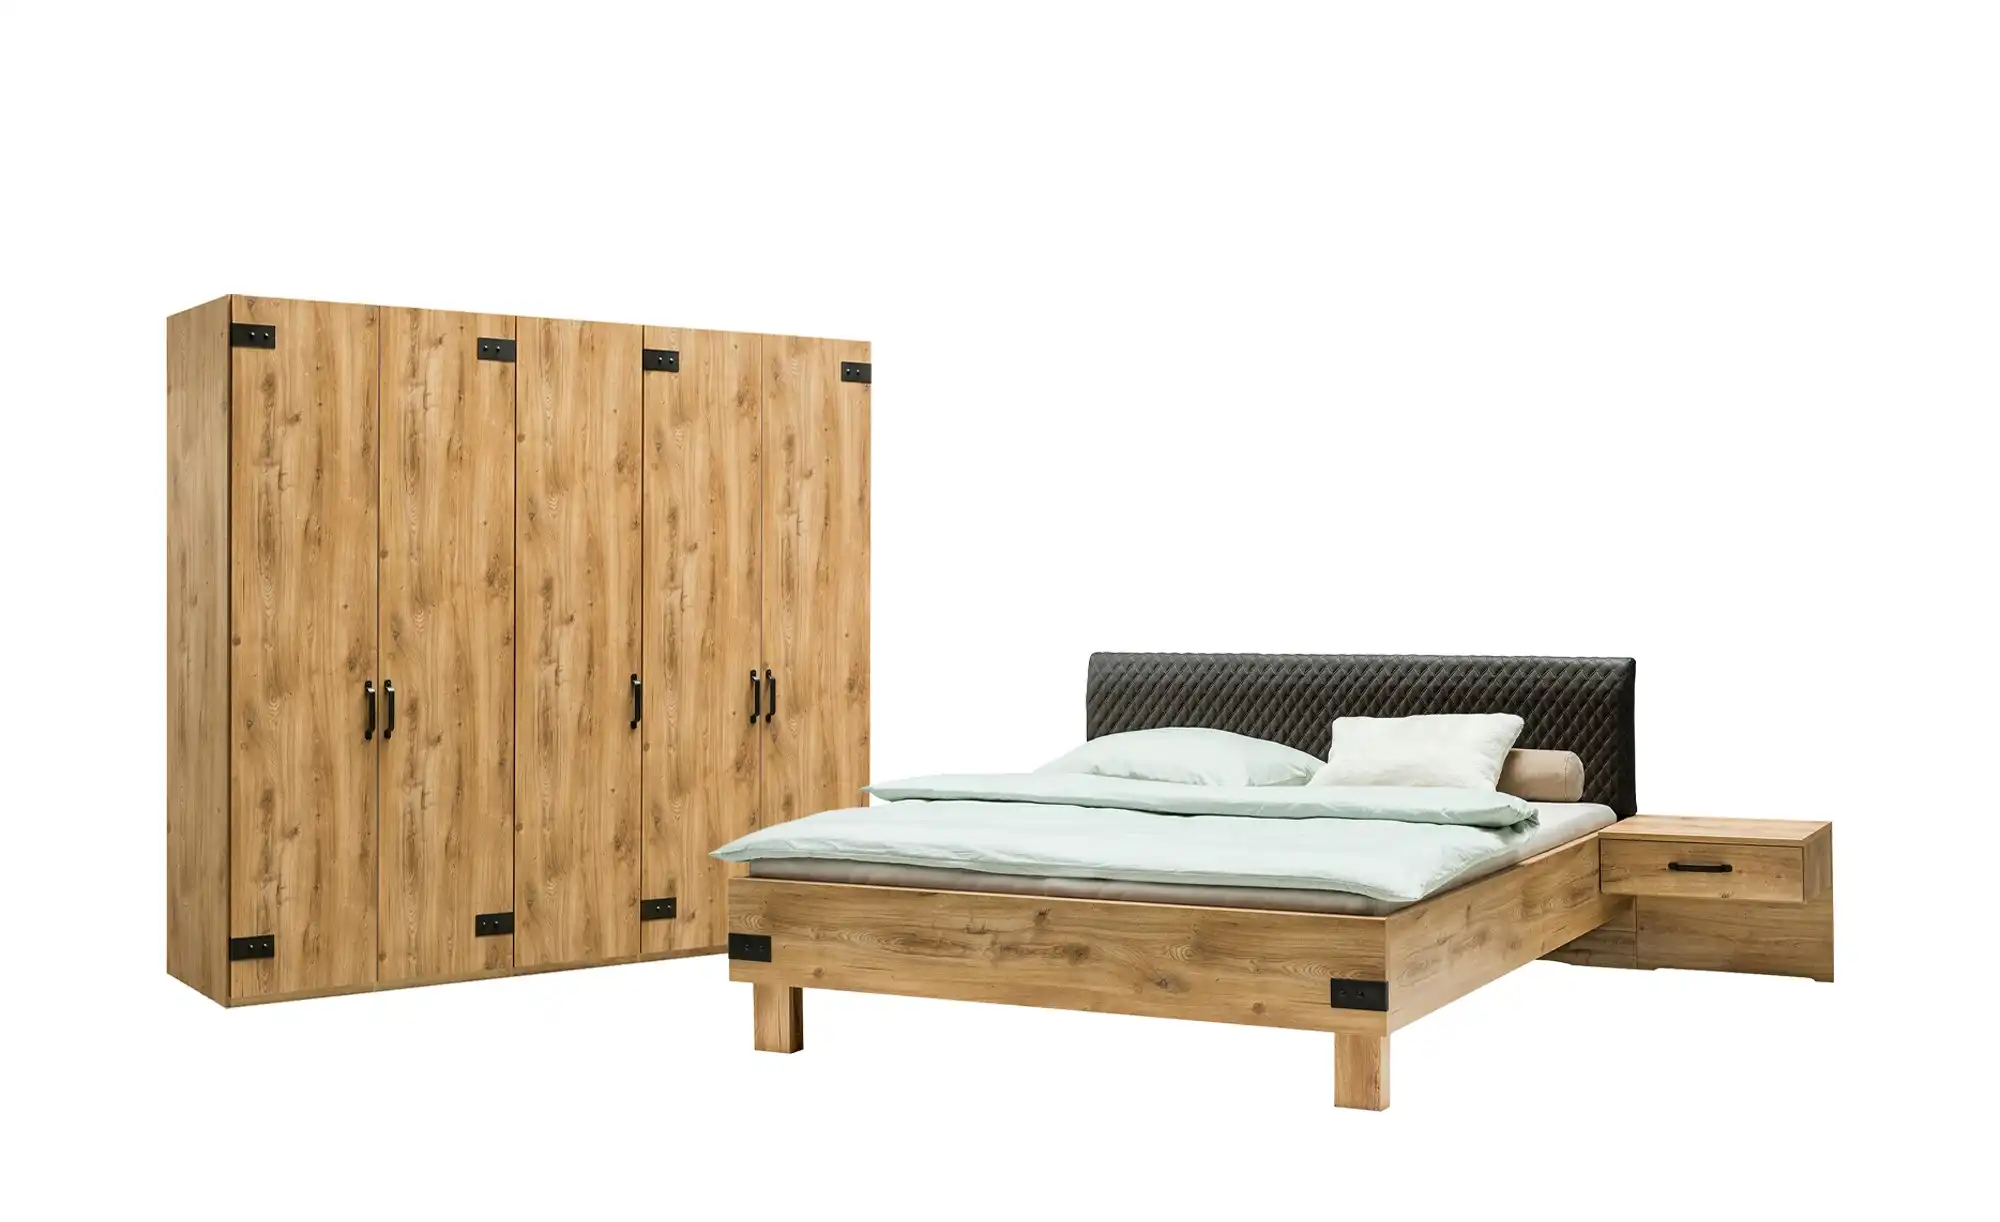 Uno Komplett Schlafzimmer 4 Teilig Bei Mobel Kraft Online Kaufen